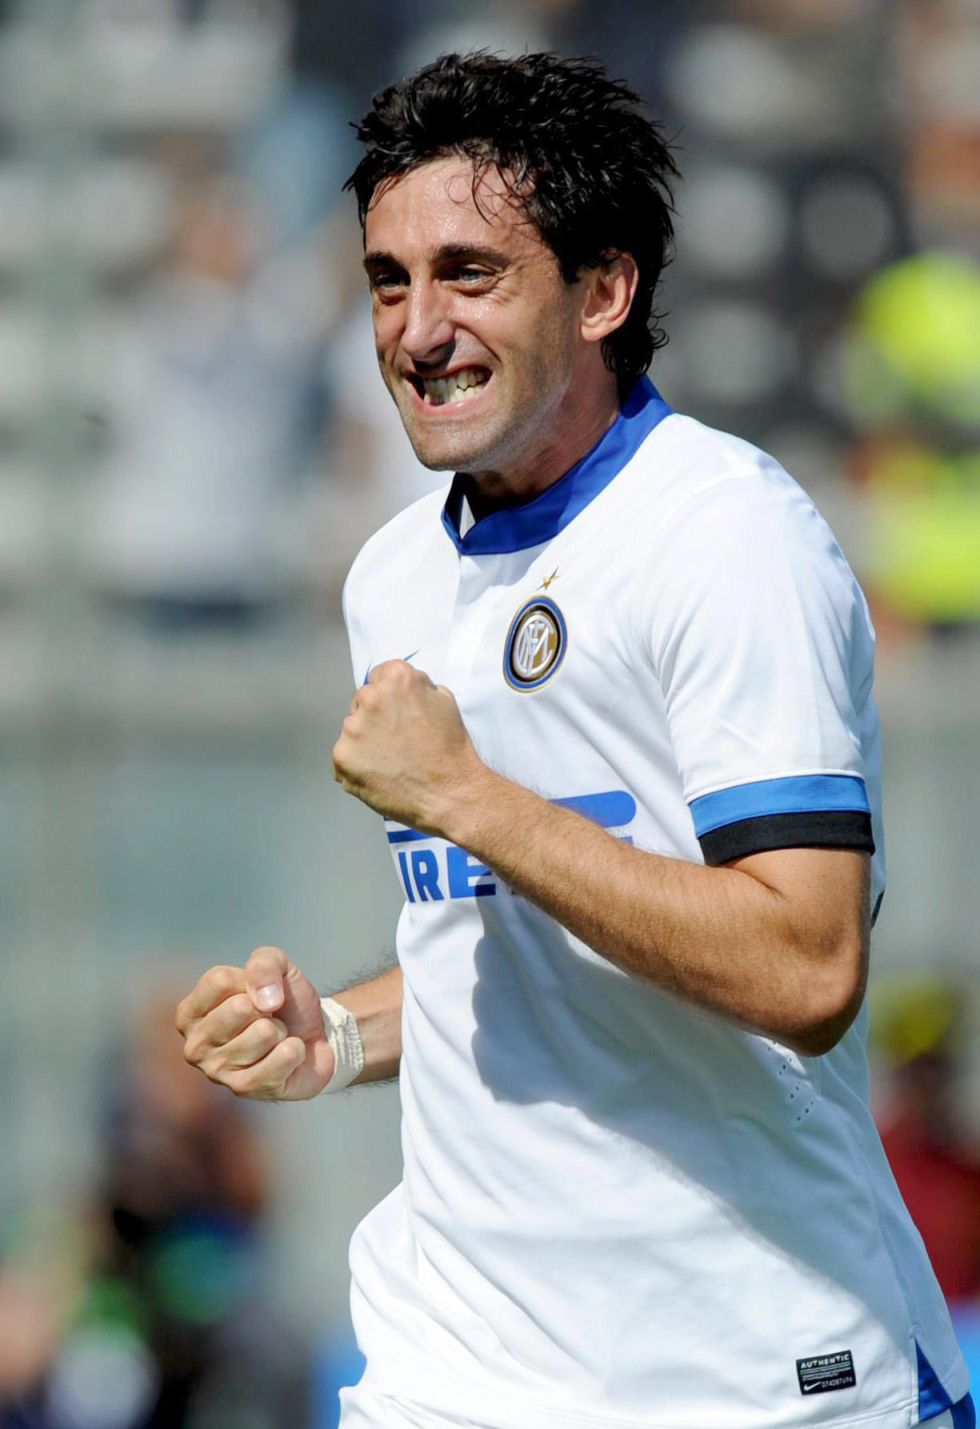 El Inter arrolla al Sassuolo y Milito reaparece y marca